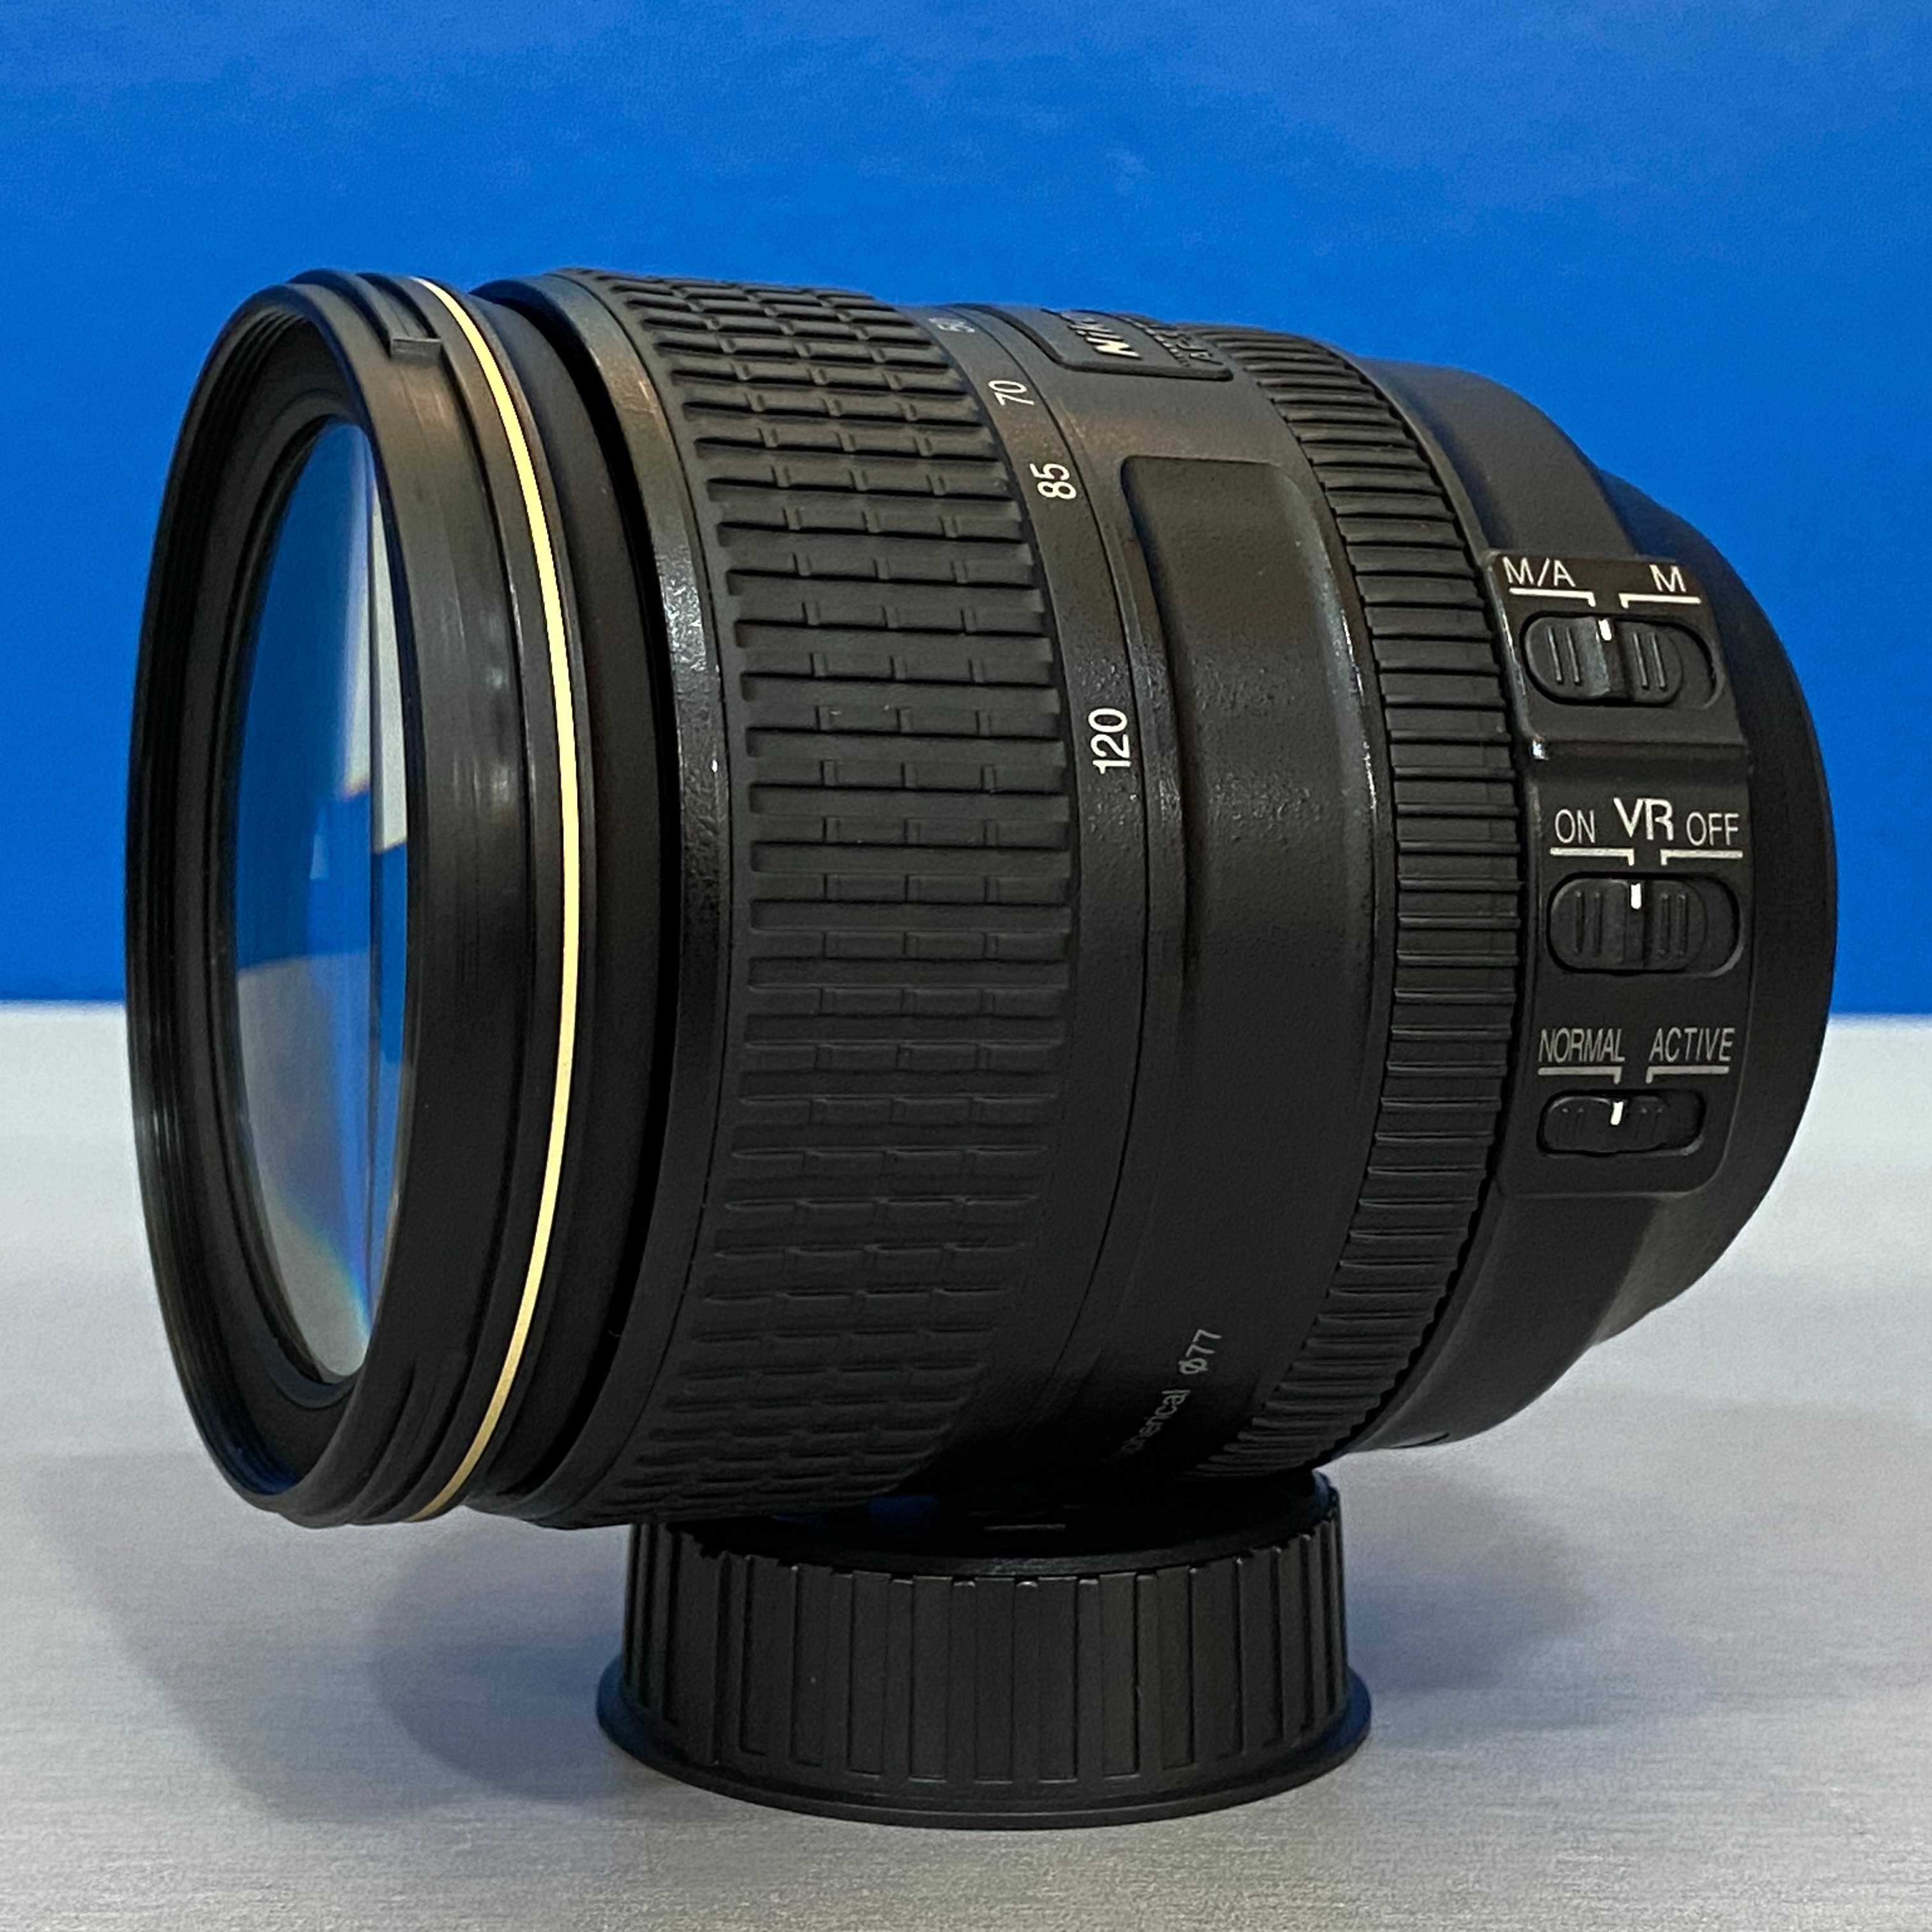 Nikon AF-S 24-120mm f/4G ED VR